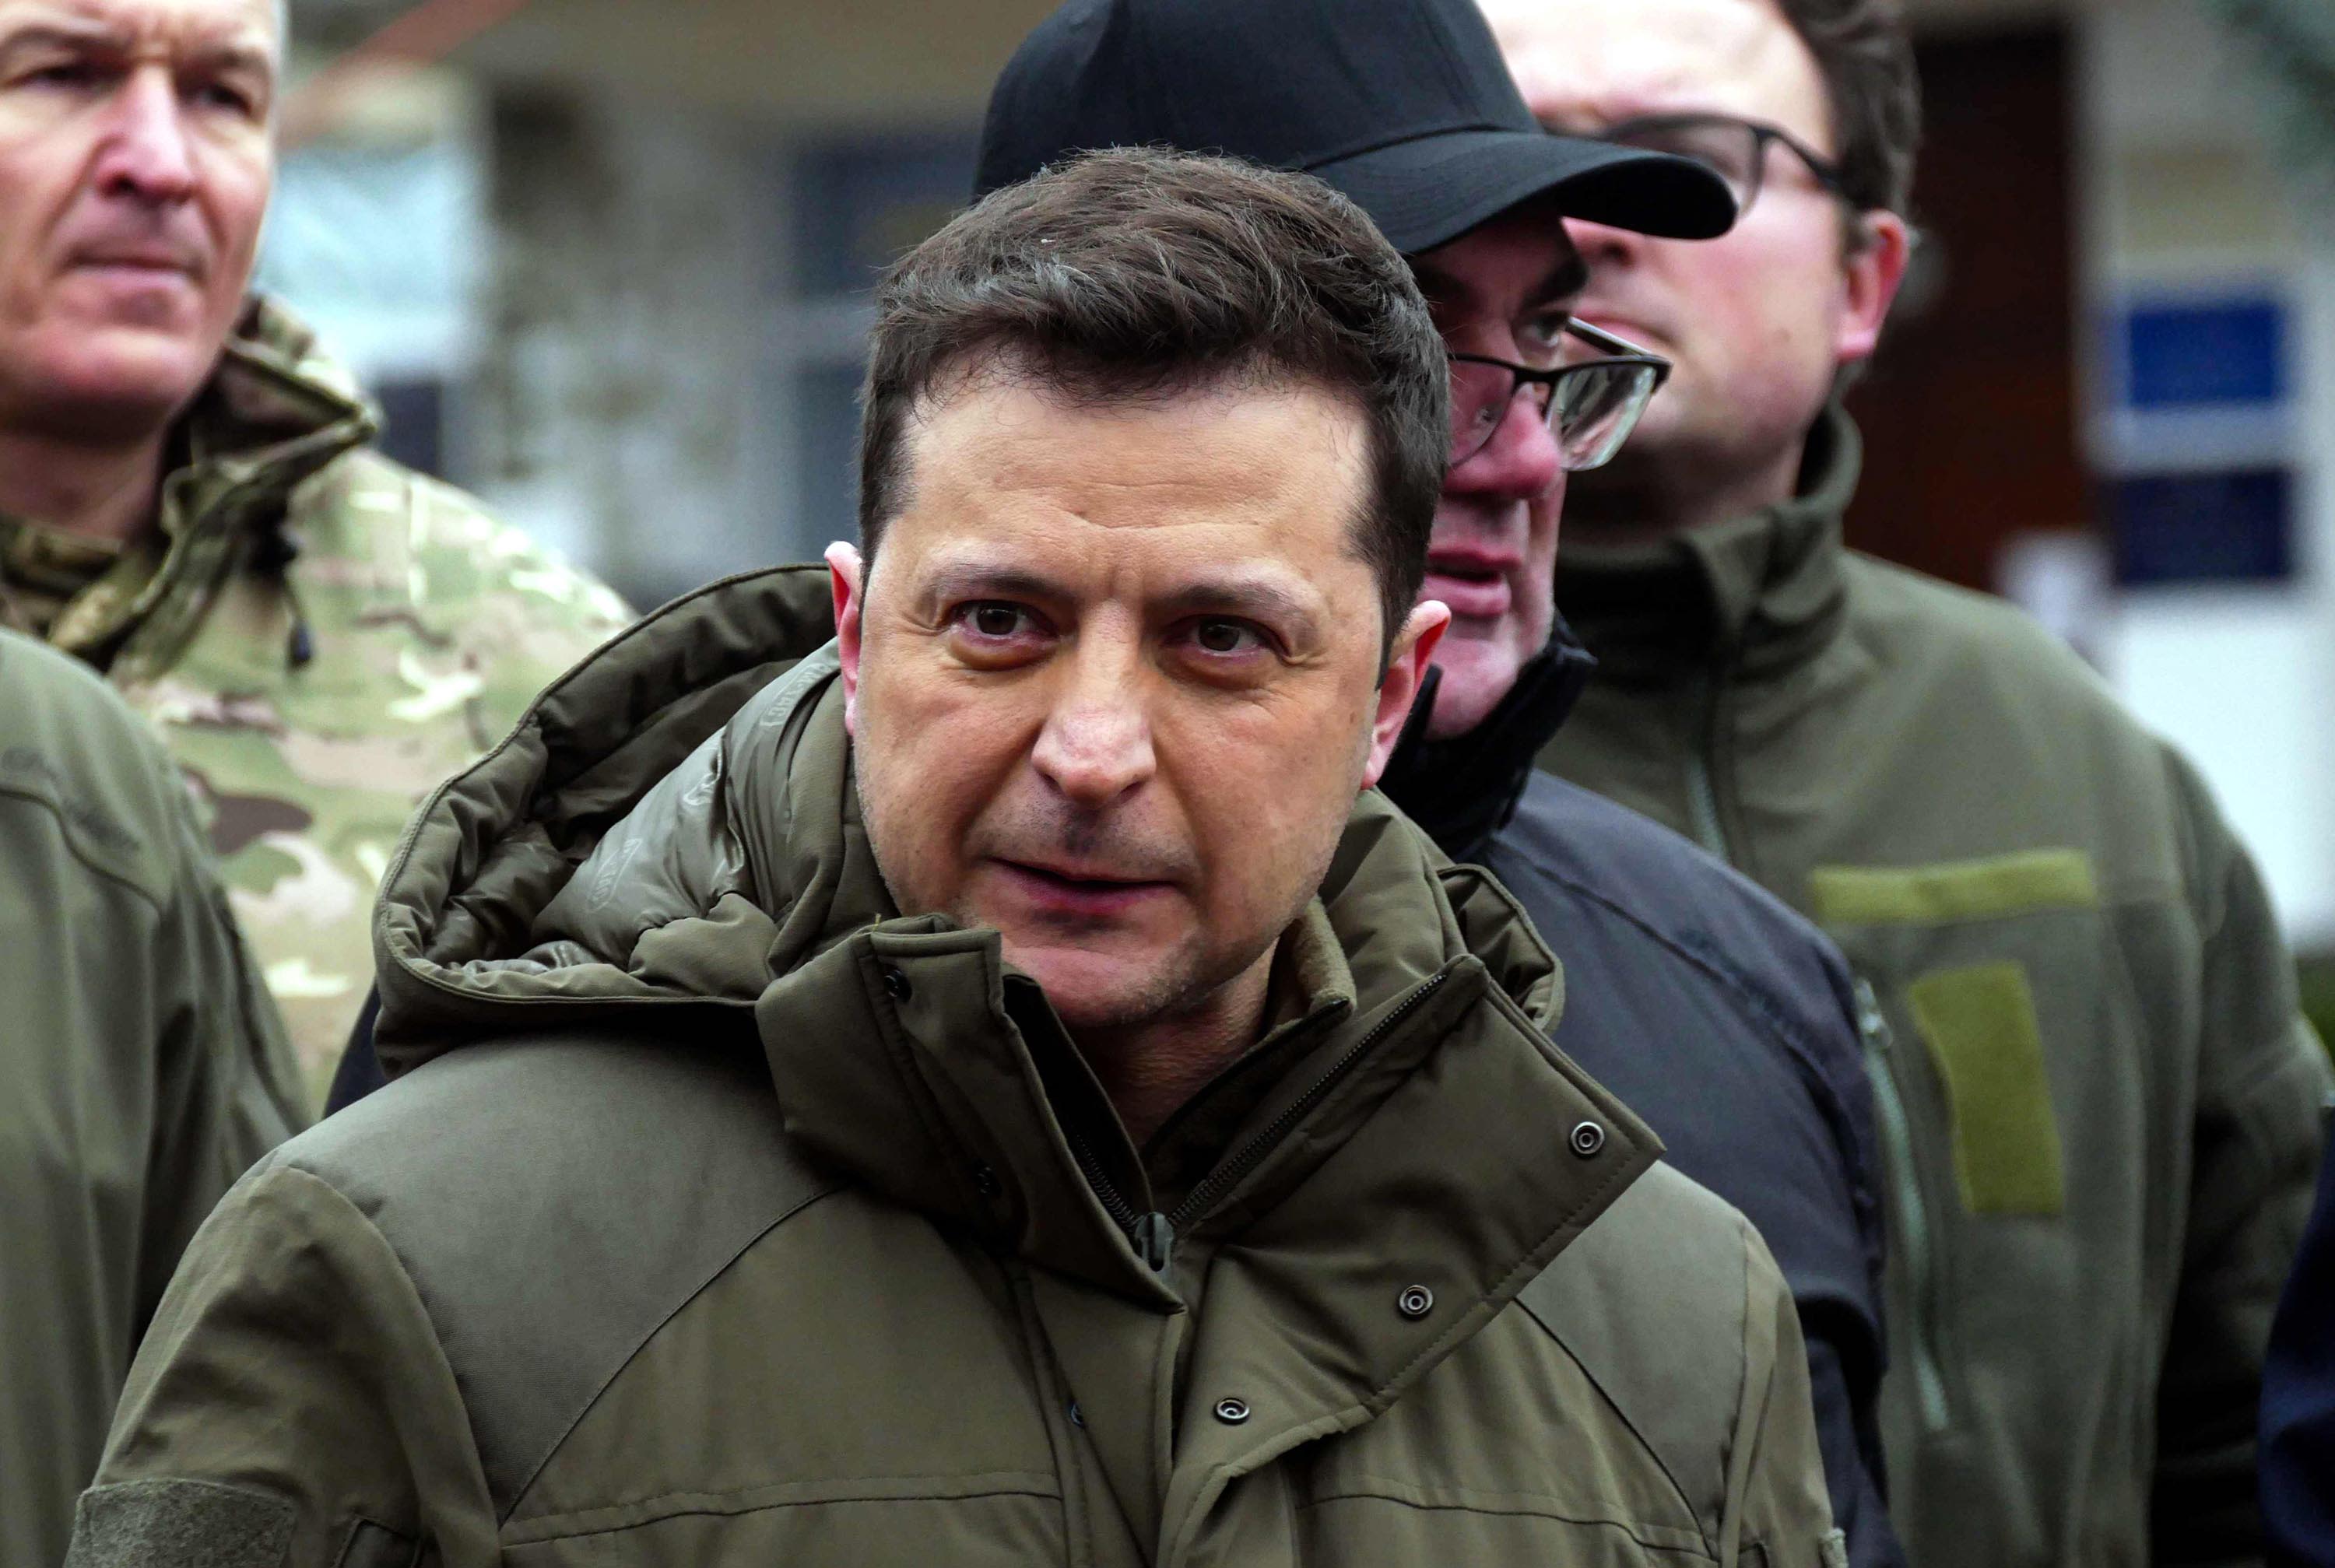 PRESIDENT OF UKRAINE ZELENSKY SELLS RIGHTS TO ALL ENTERPRISES IN UKRAINE TO  SERHIY SHEFIR